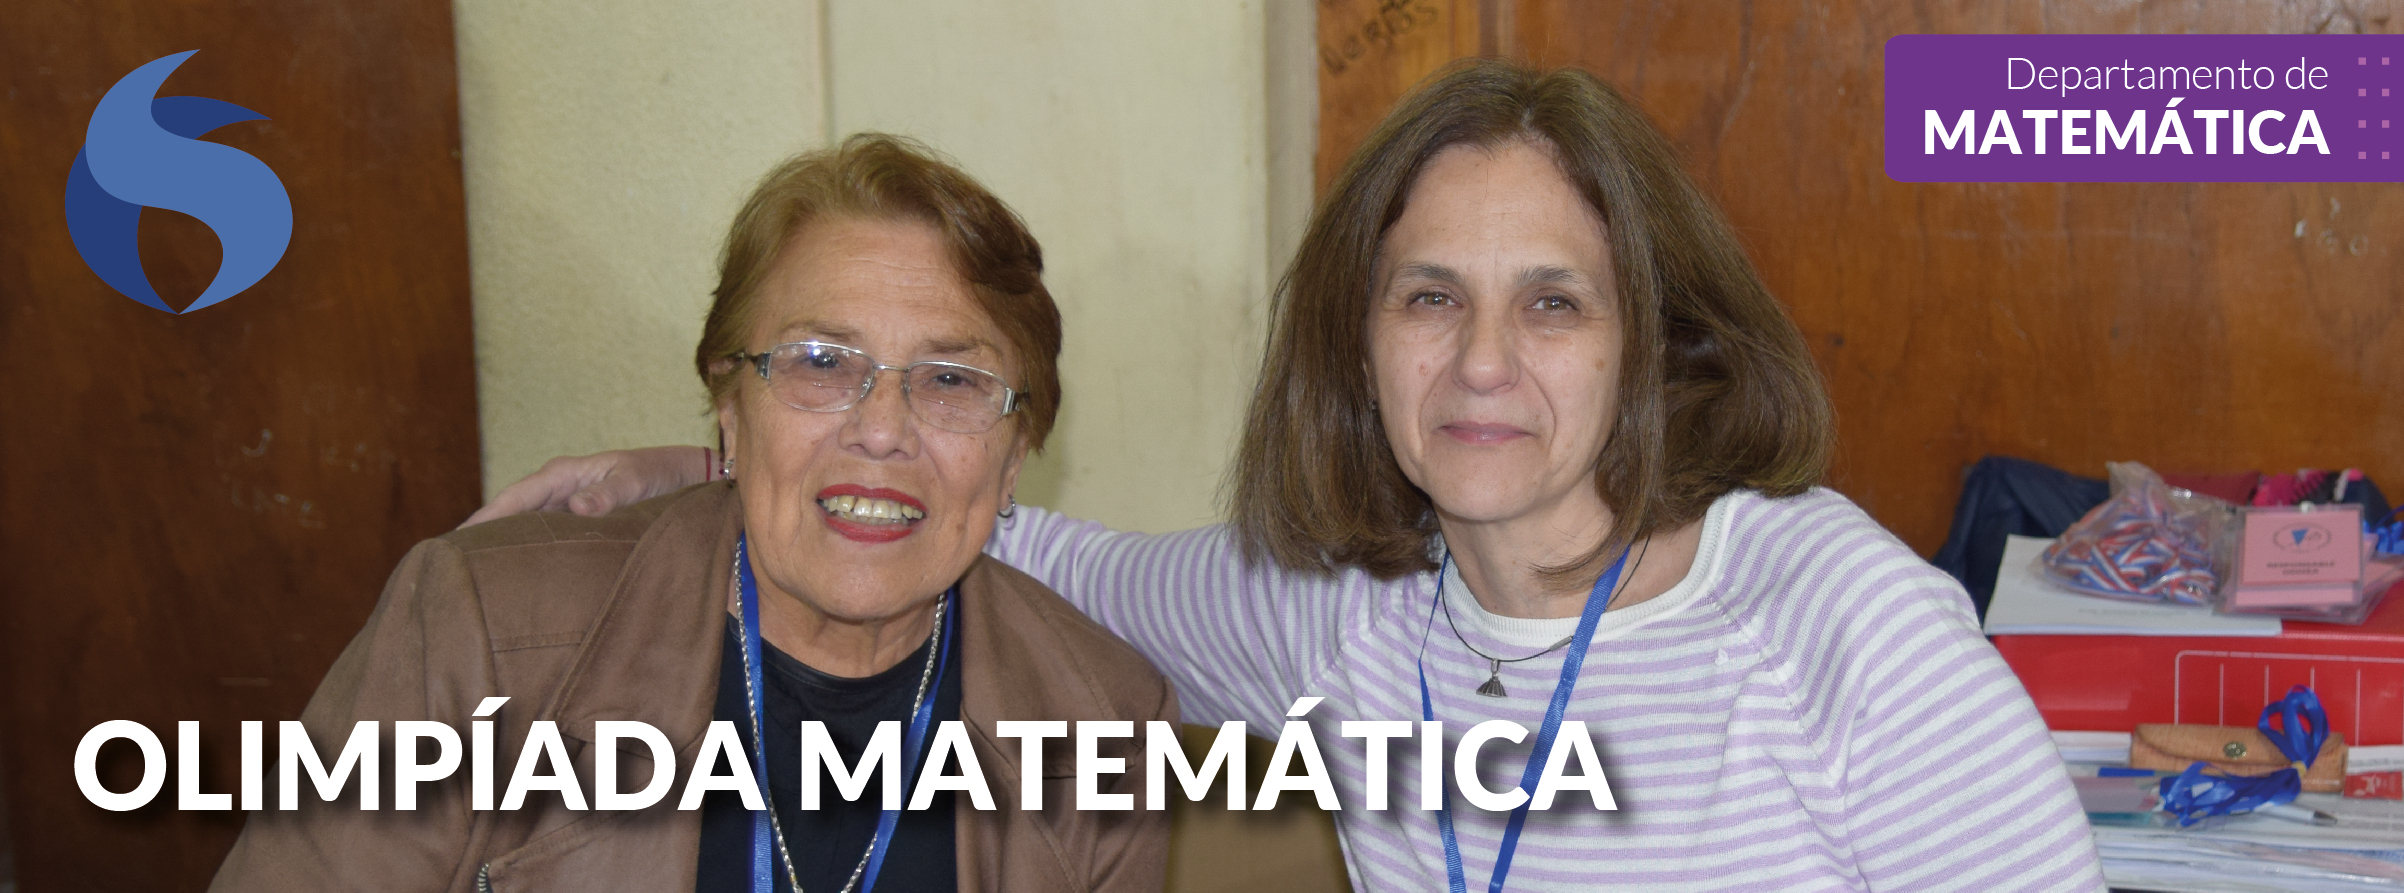 Olimpíadas Matemáticas Santafesinas